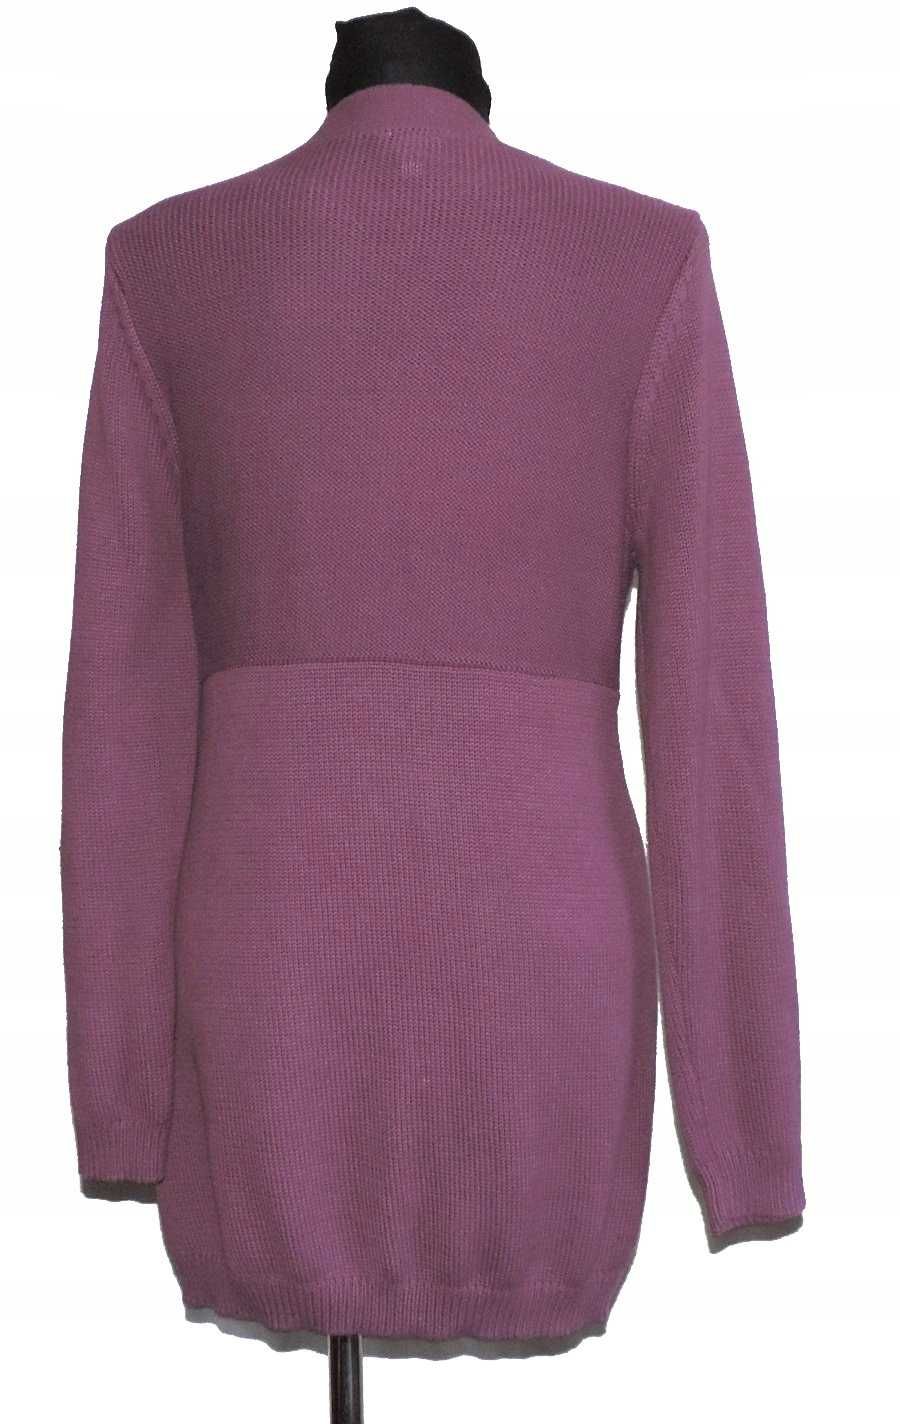 Sweter włóczka akryl + bawełna dłuższy rozmiar S | 83E